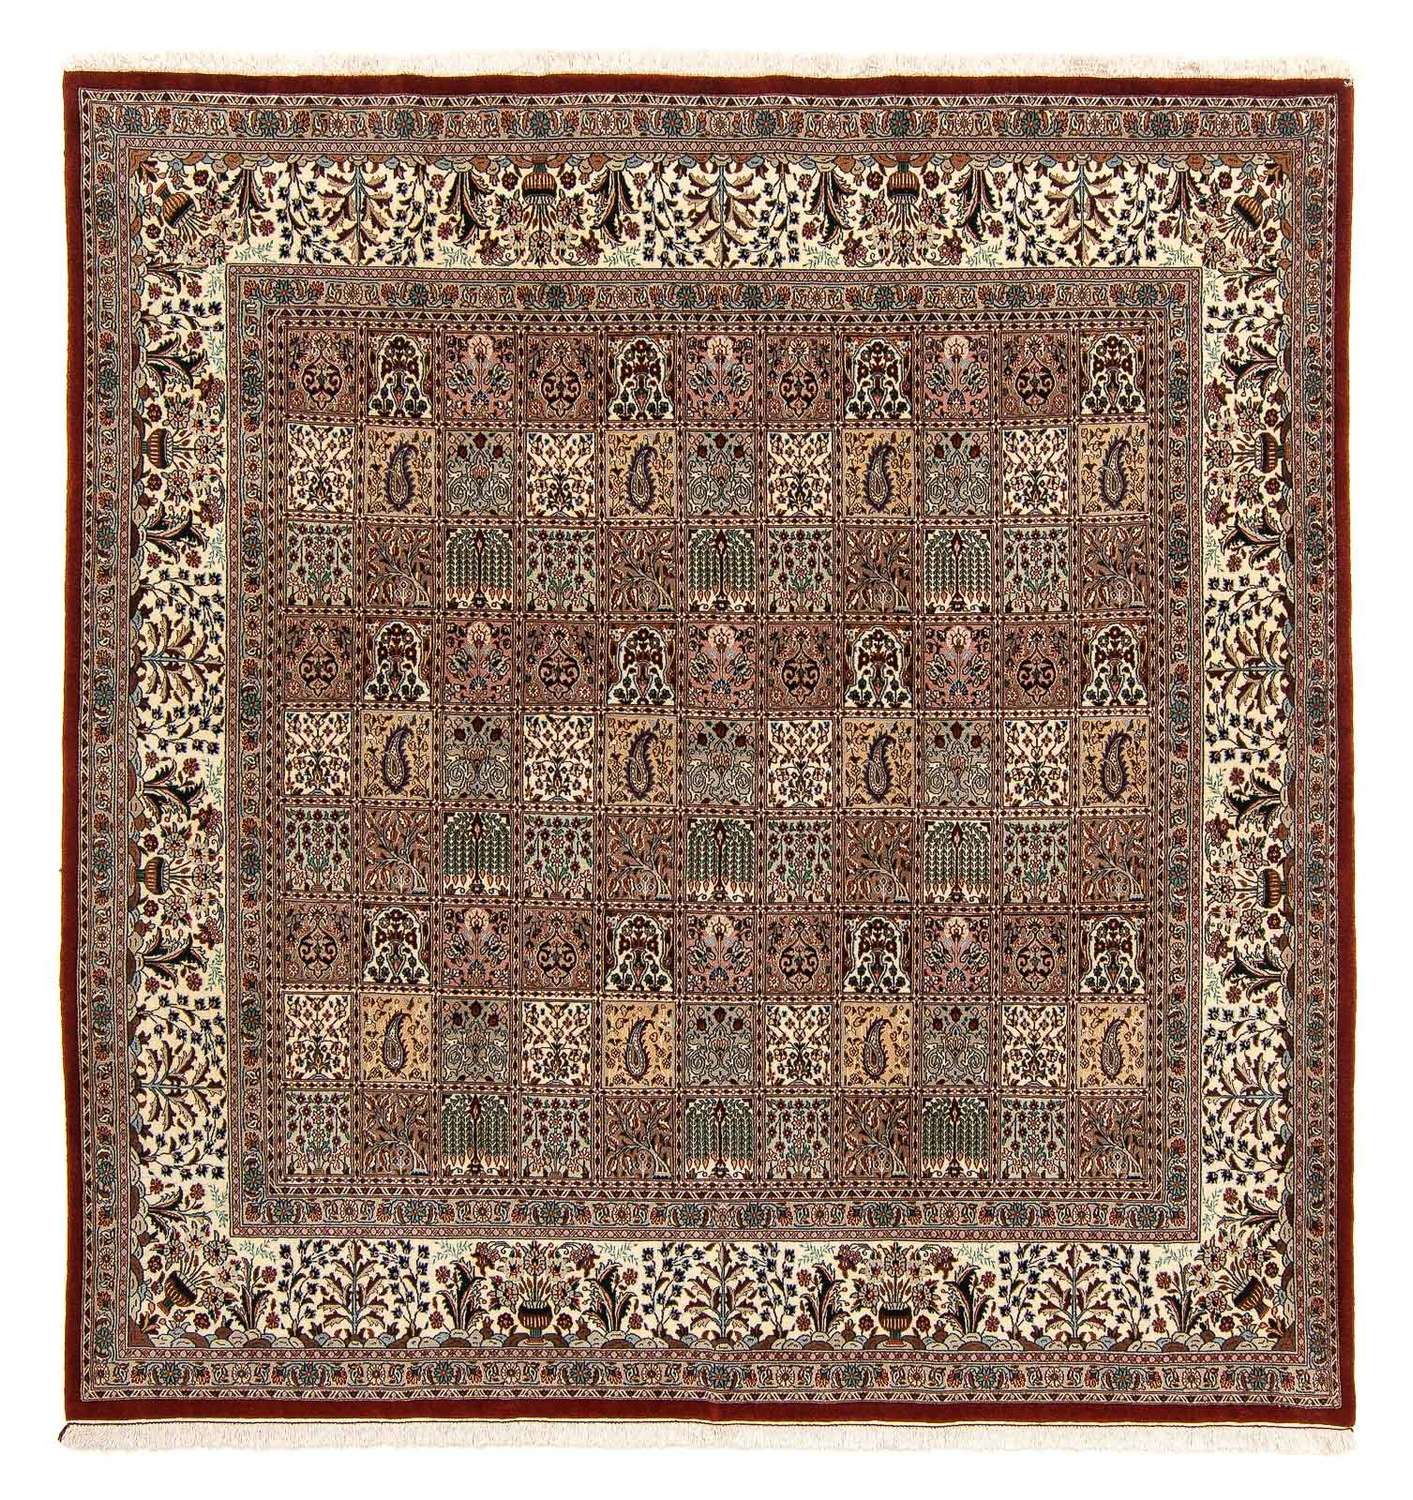 Perzisch tapijt - Klassiek vierkant  - 250 x 249 cm - veelkleurig